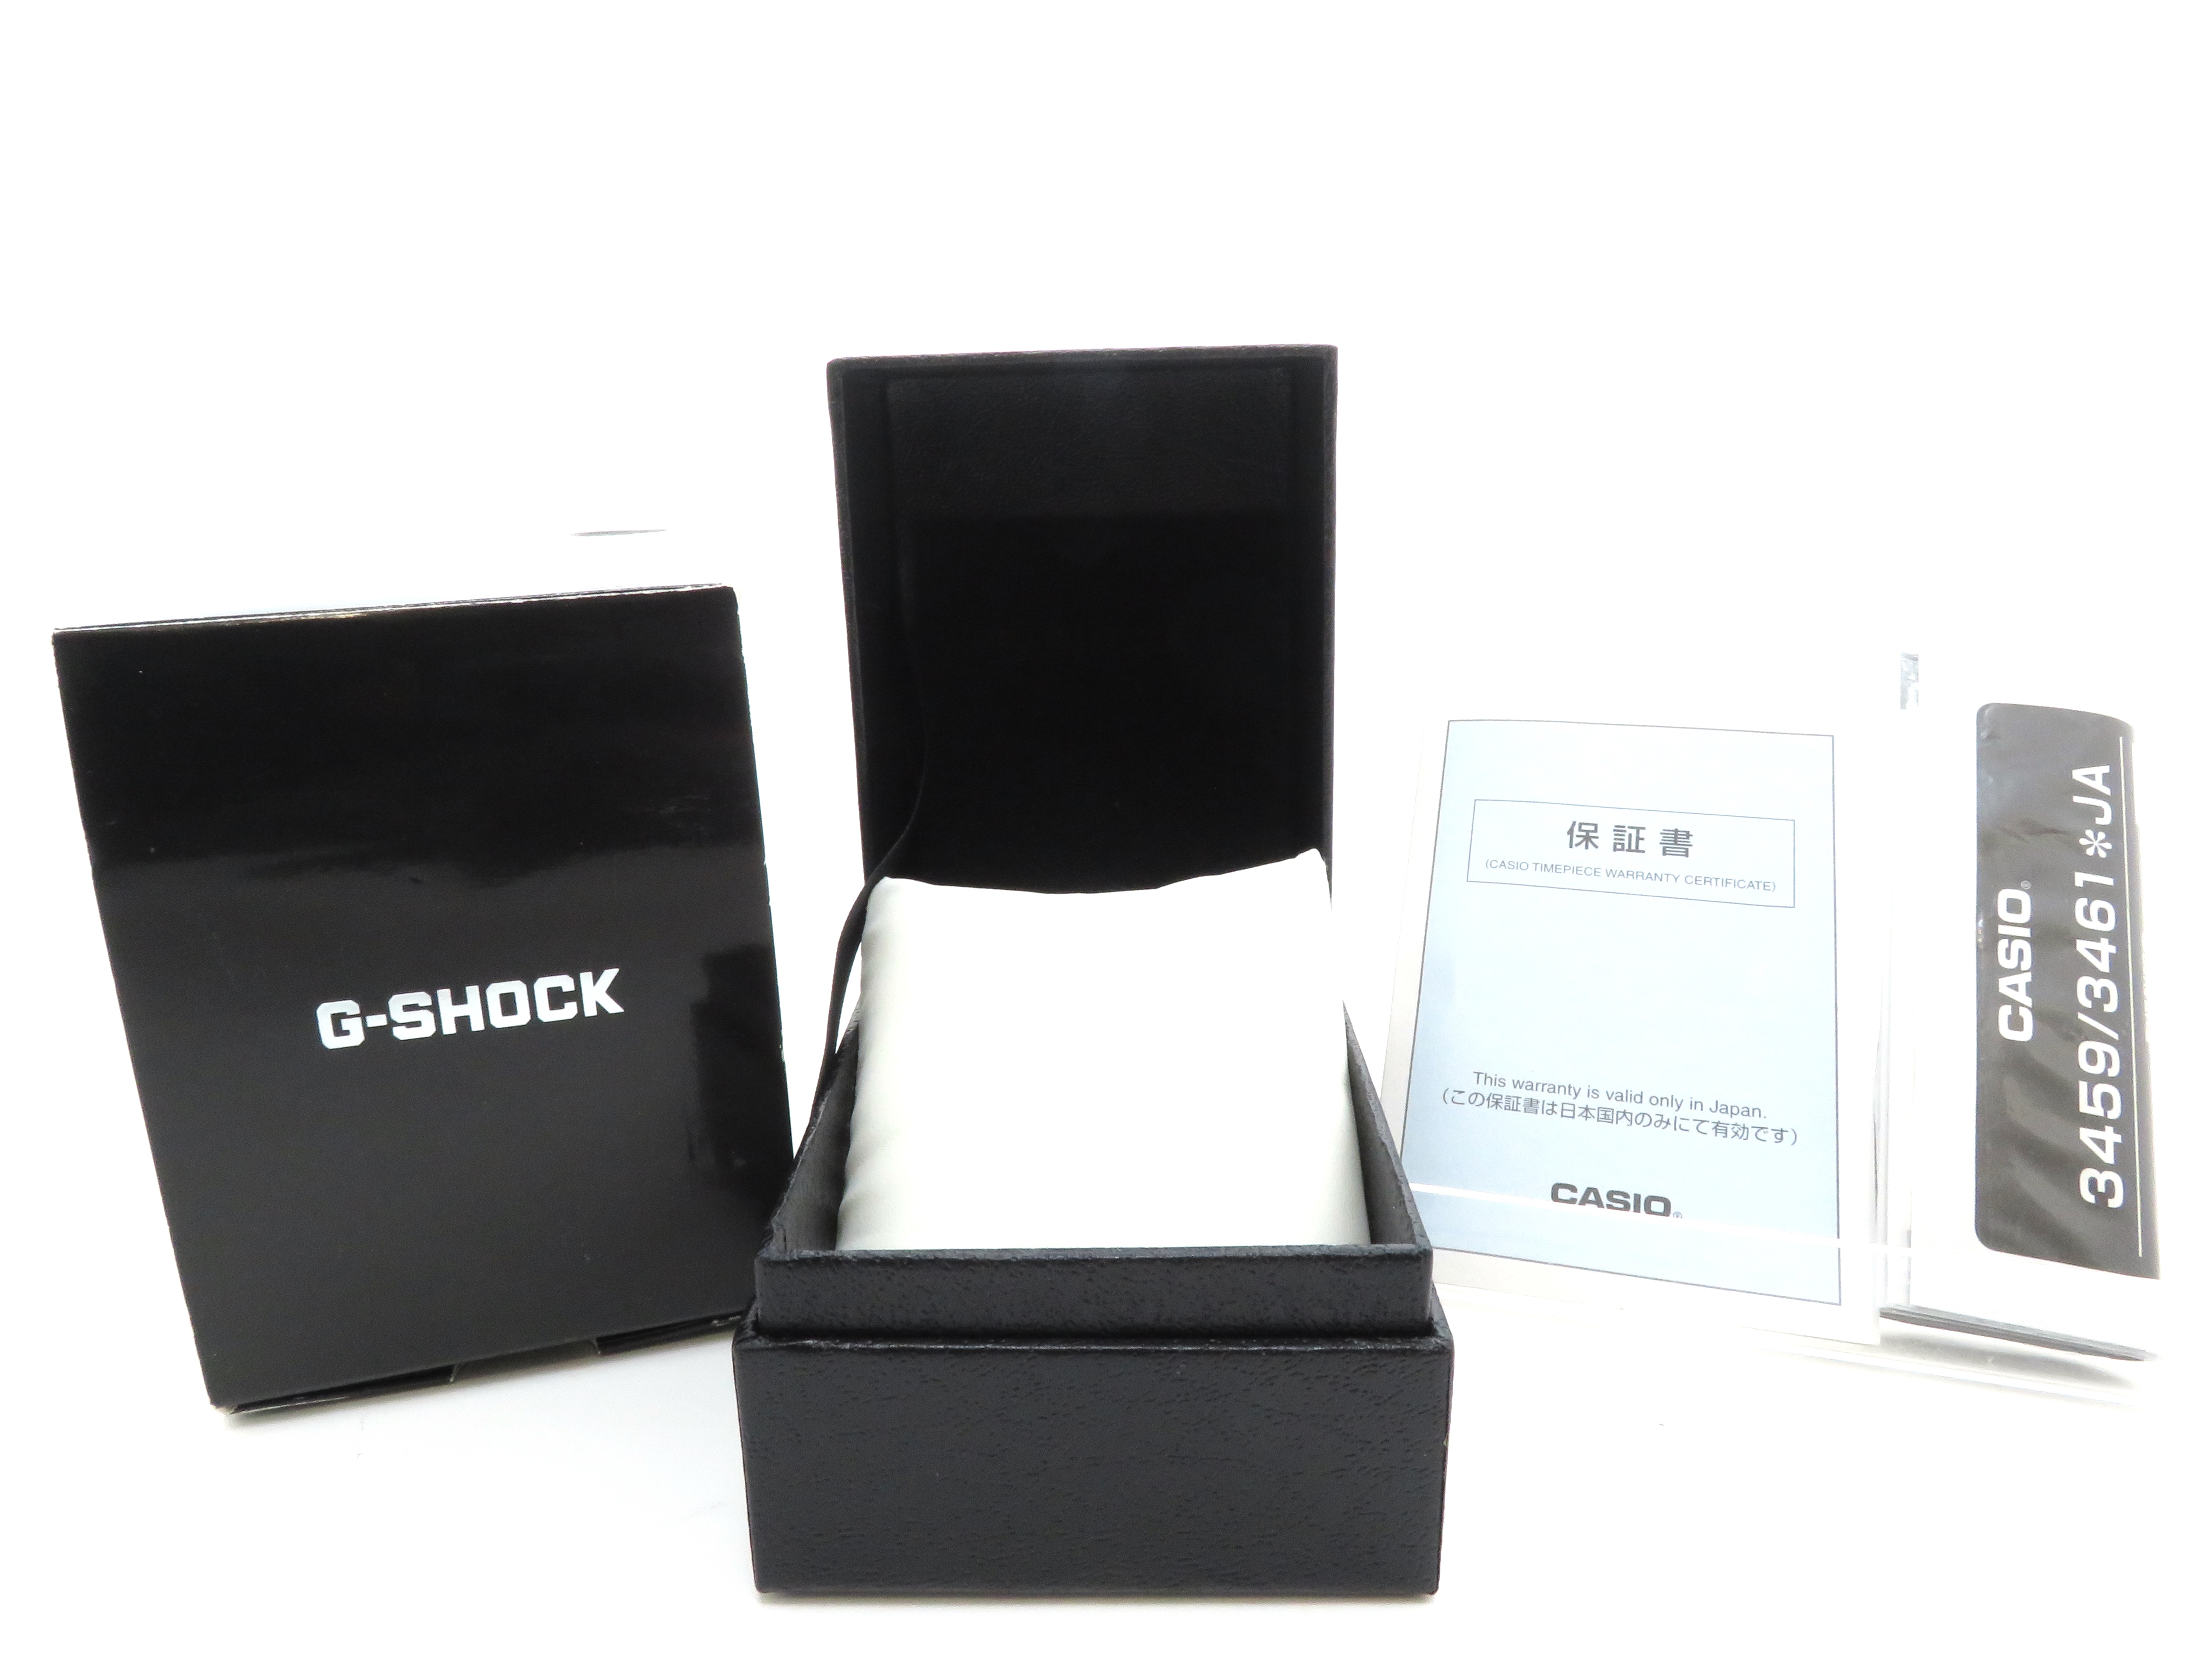 Casio カシオ G Shock フルメタル Gショック Gmw B5000d 1jf 国内並行ギャランティー付き 19年7月日付 ソーラー電波 クオーツ Ss ステンレス スマートフォンリンク メンズ レディース 男女兼用ウォッチ 時計 4